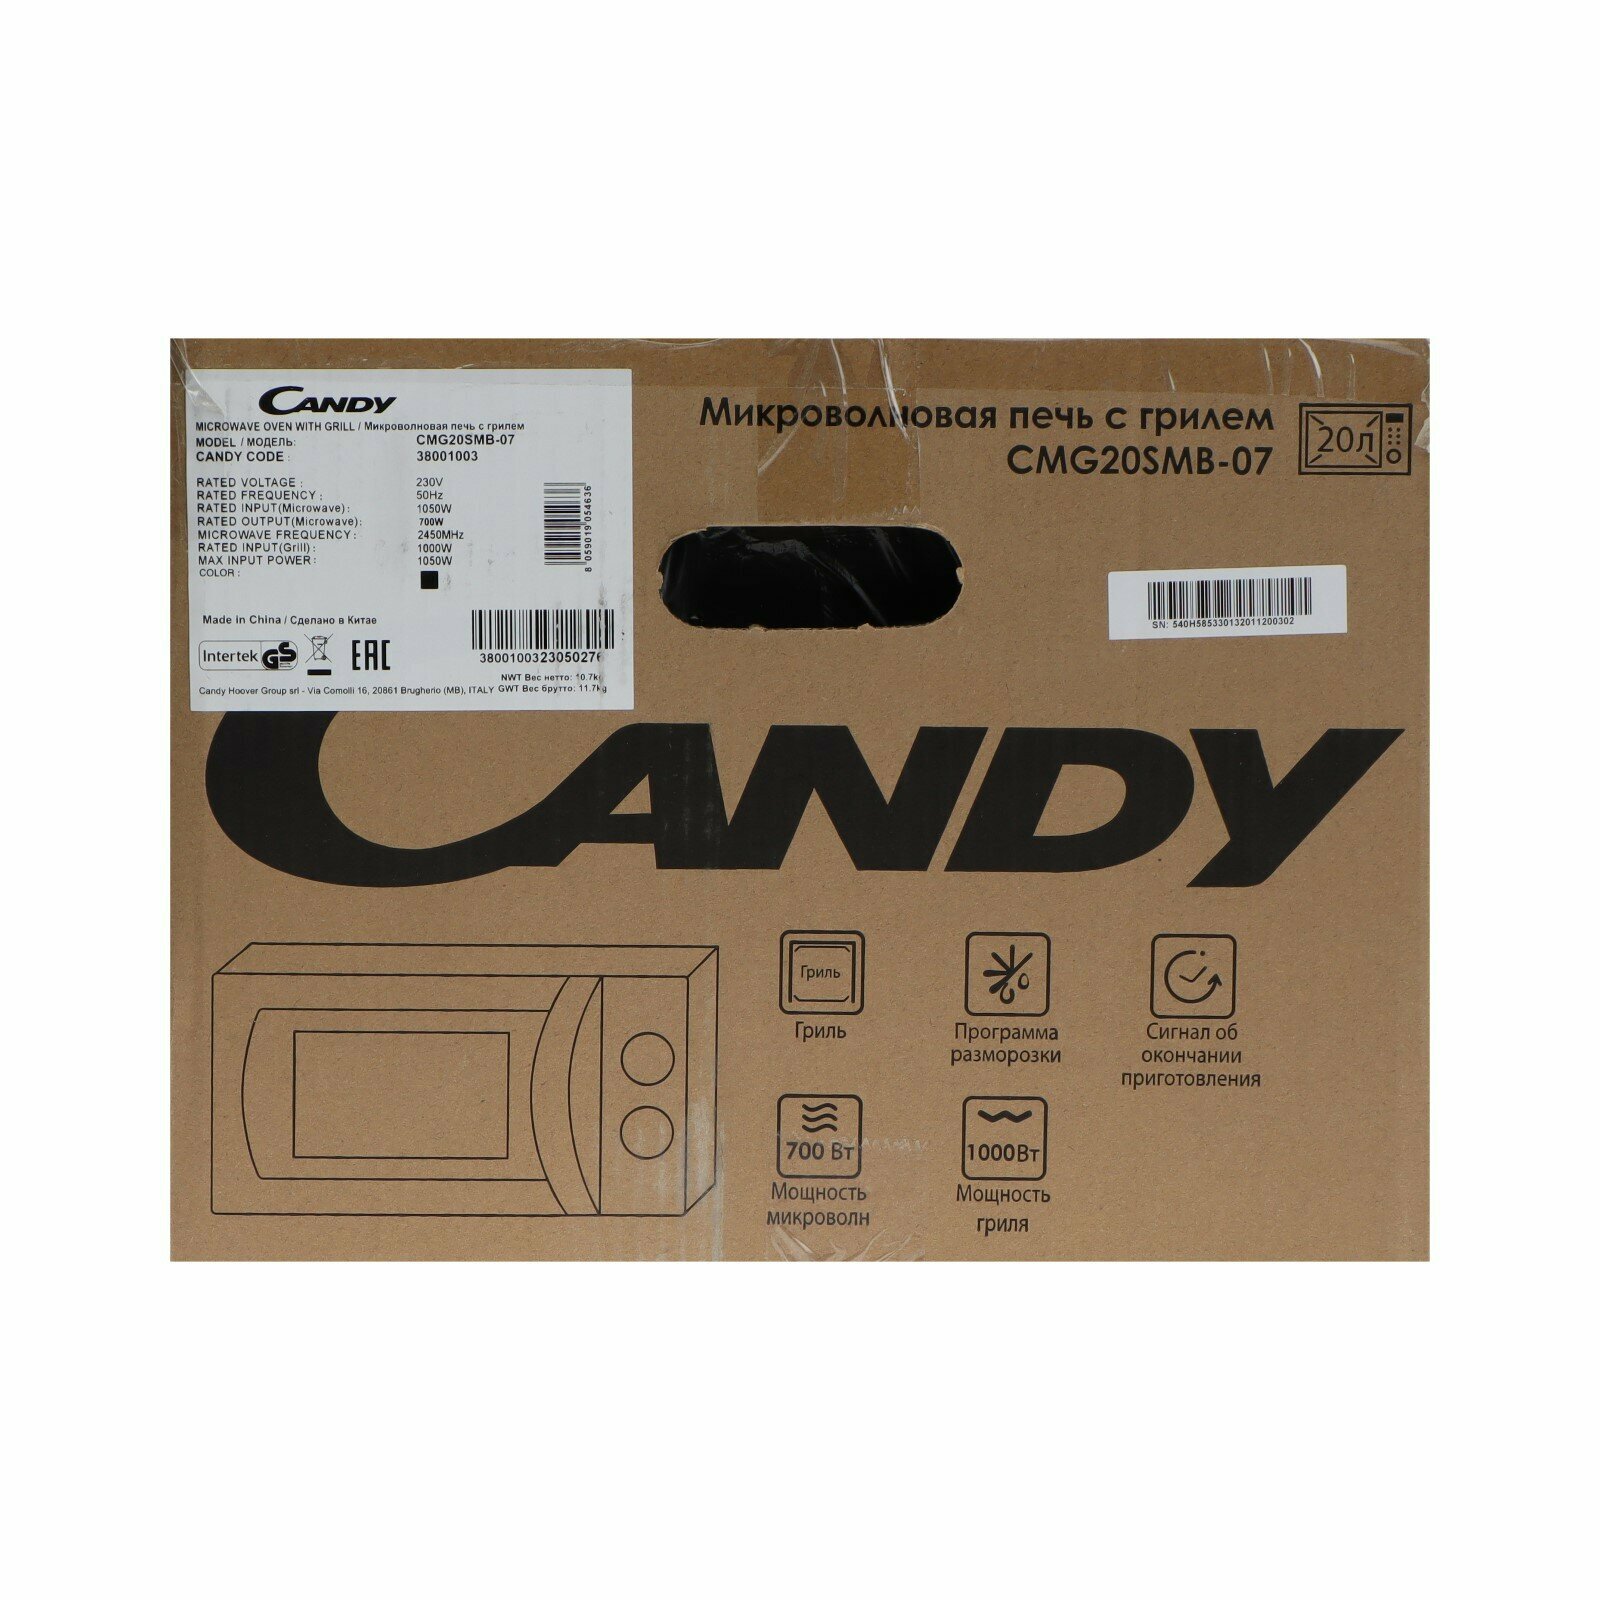 Микроволновая печь Candy CMG20SMB-07, 700 Вт, 20 л, чёрная 9796232